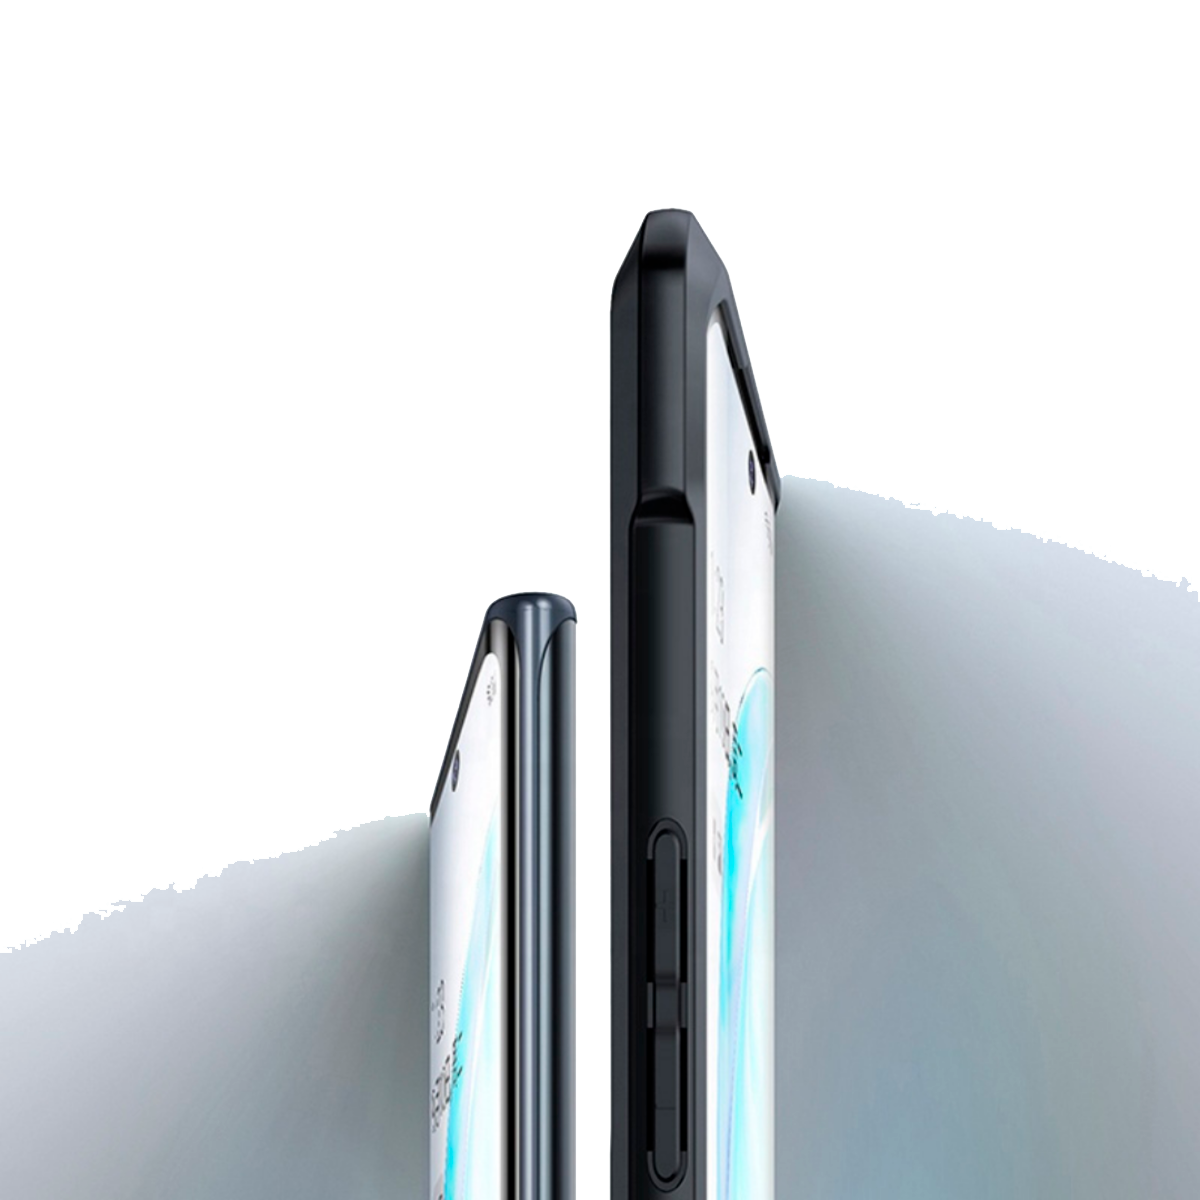 Lensun Funda Case Air Shock Galaxy Note 20 Ultra – Lensun Oficial